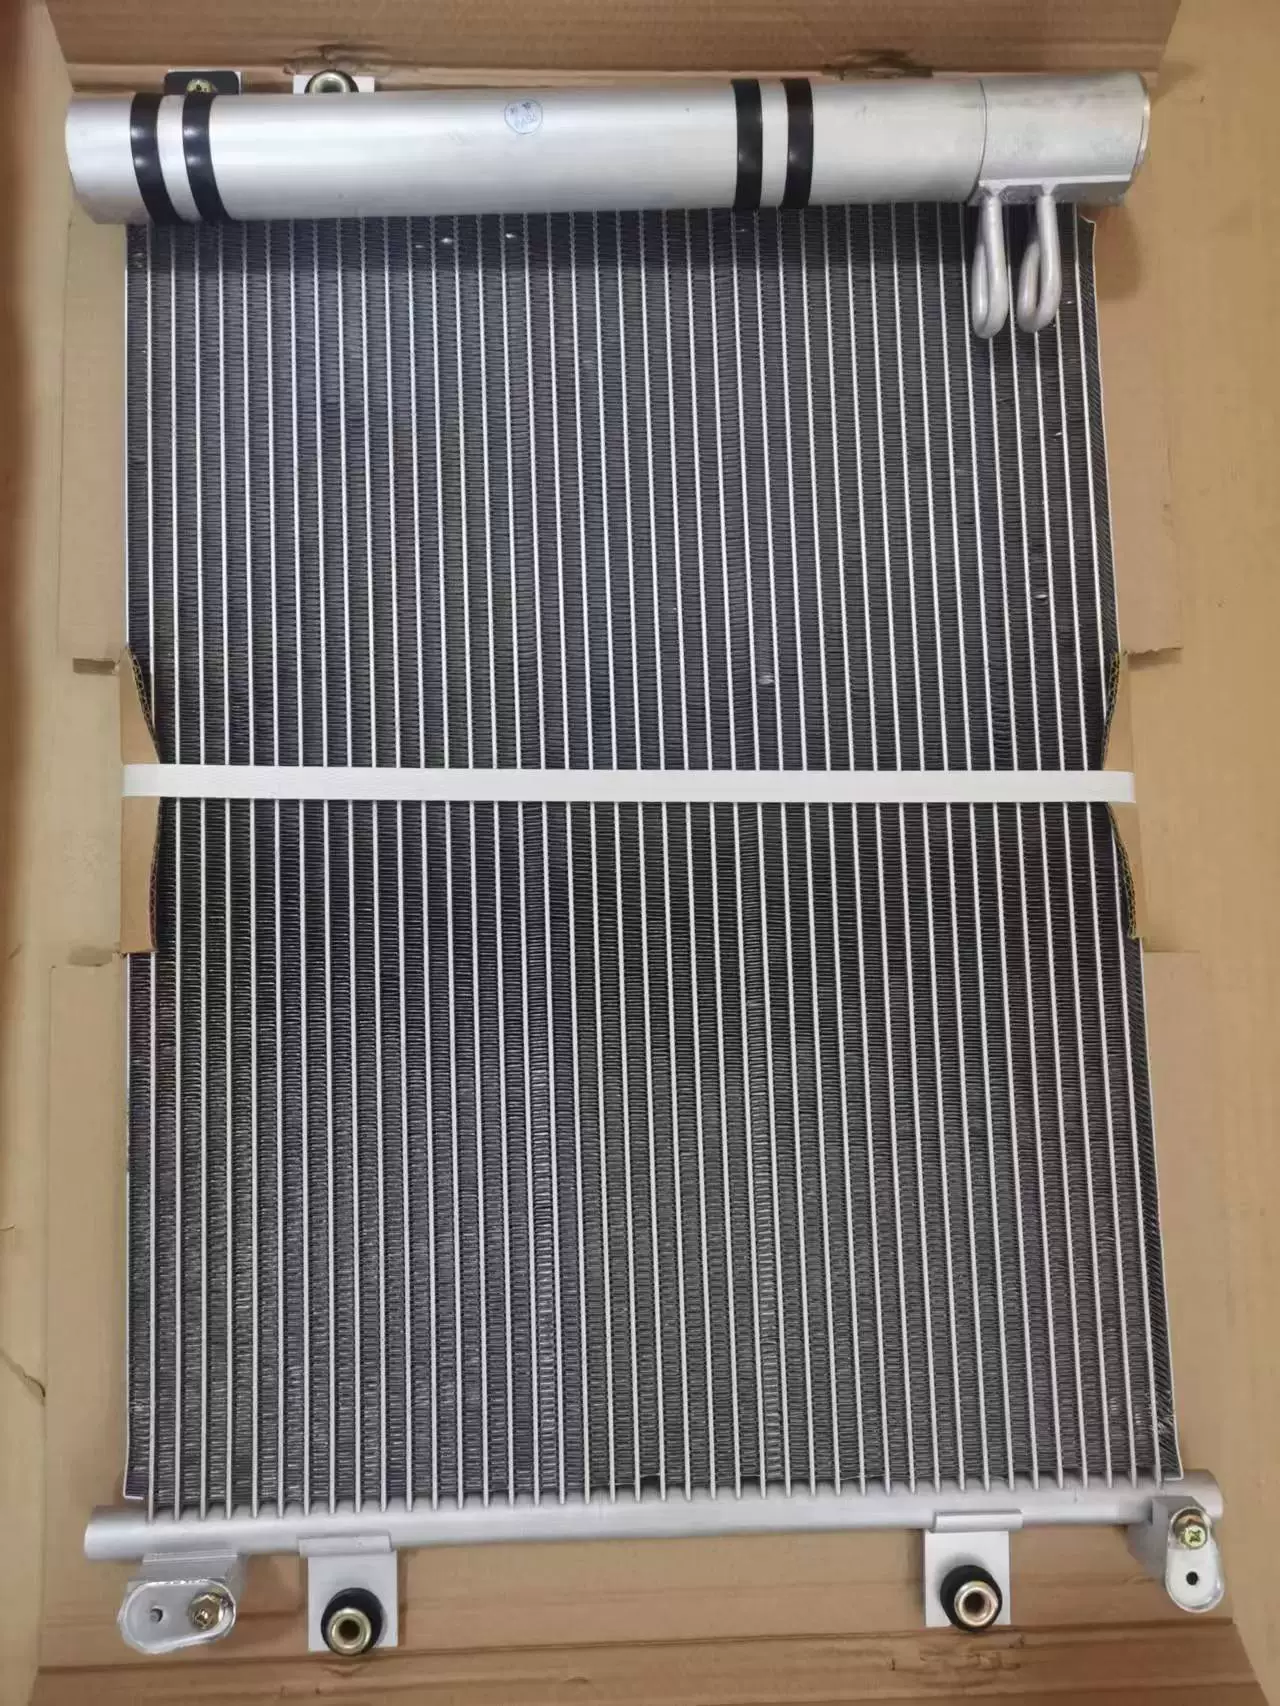 PC200/210/220/240-8M0 Komatsu excavator air conditioning condenser